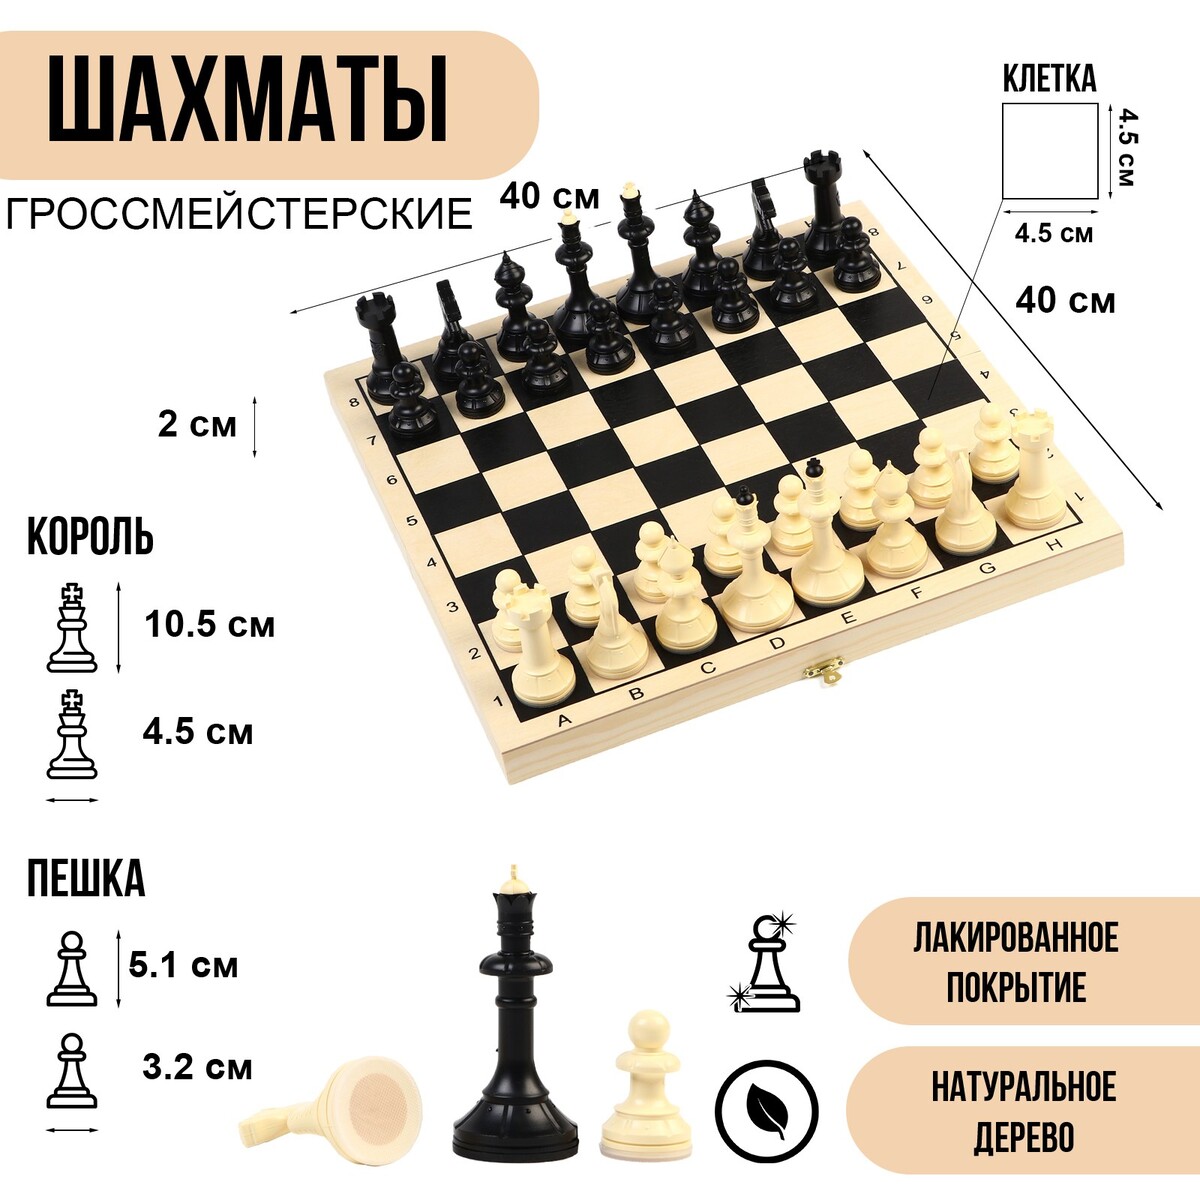 Шахматы гроссмейстерские, турнирные 40 х 40 см, король 10.5 см шахматы турнирные деревянные 40 х 40 см